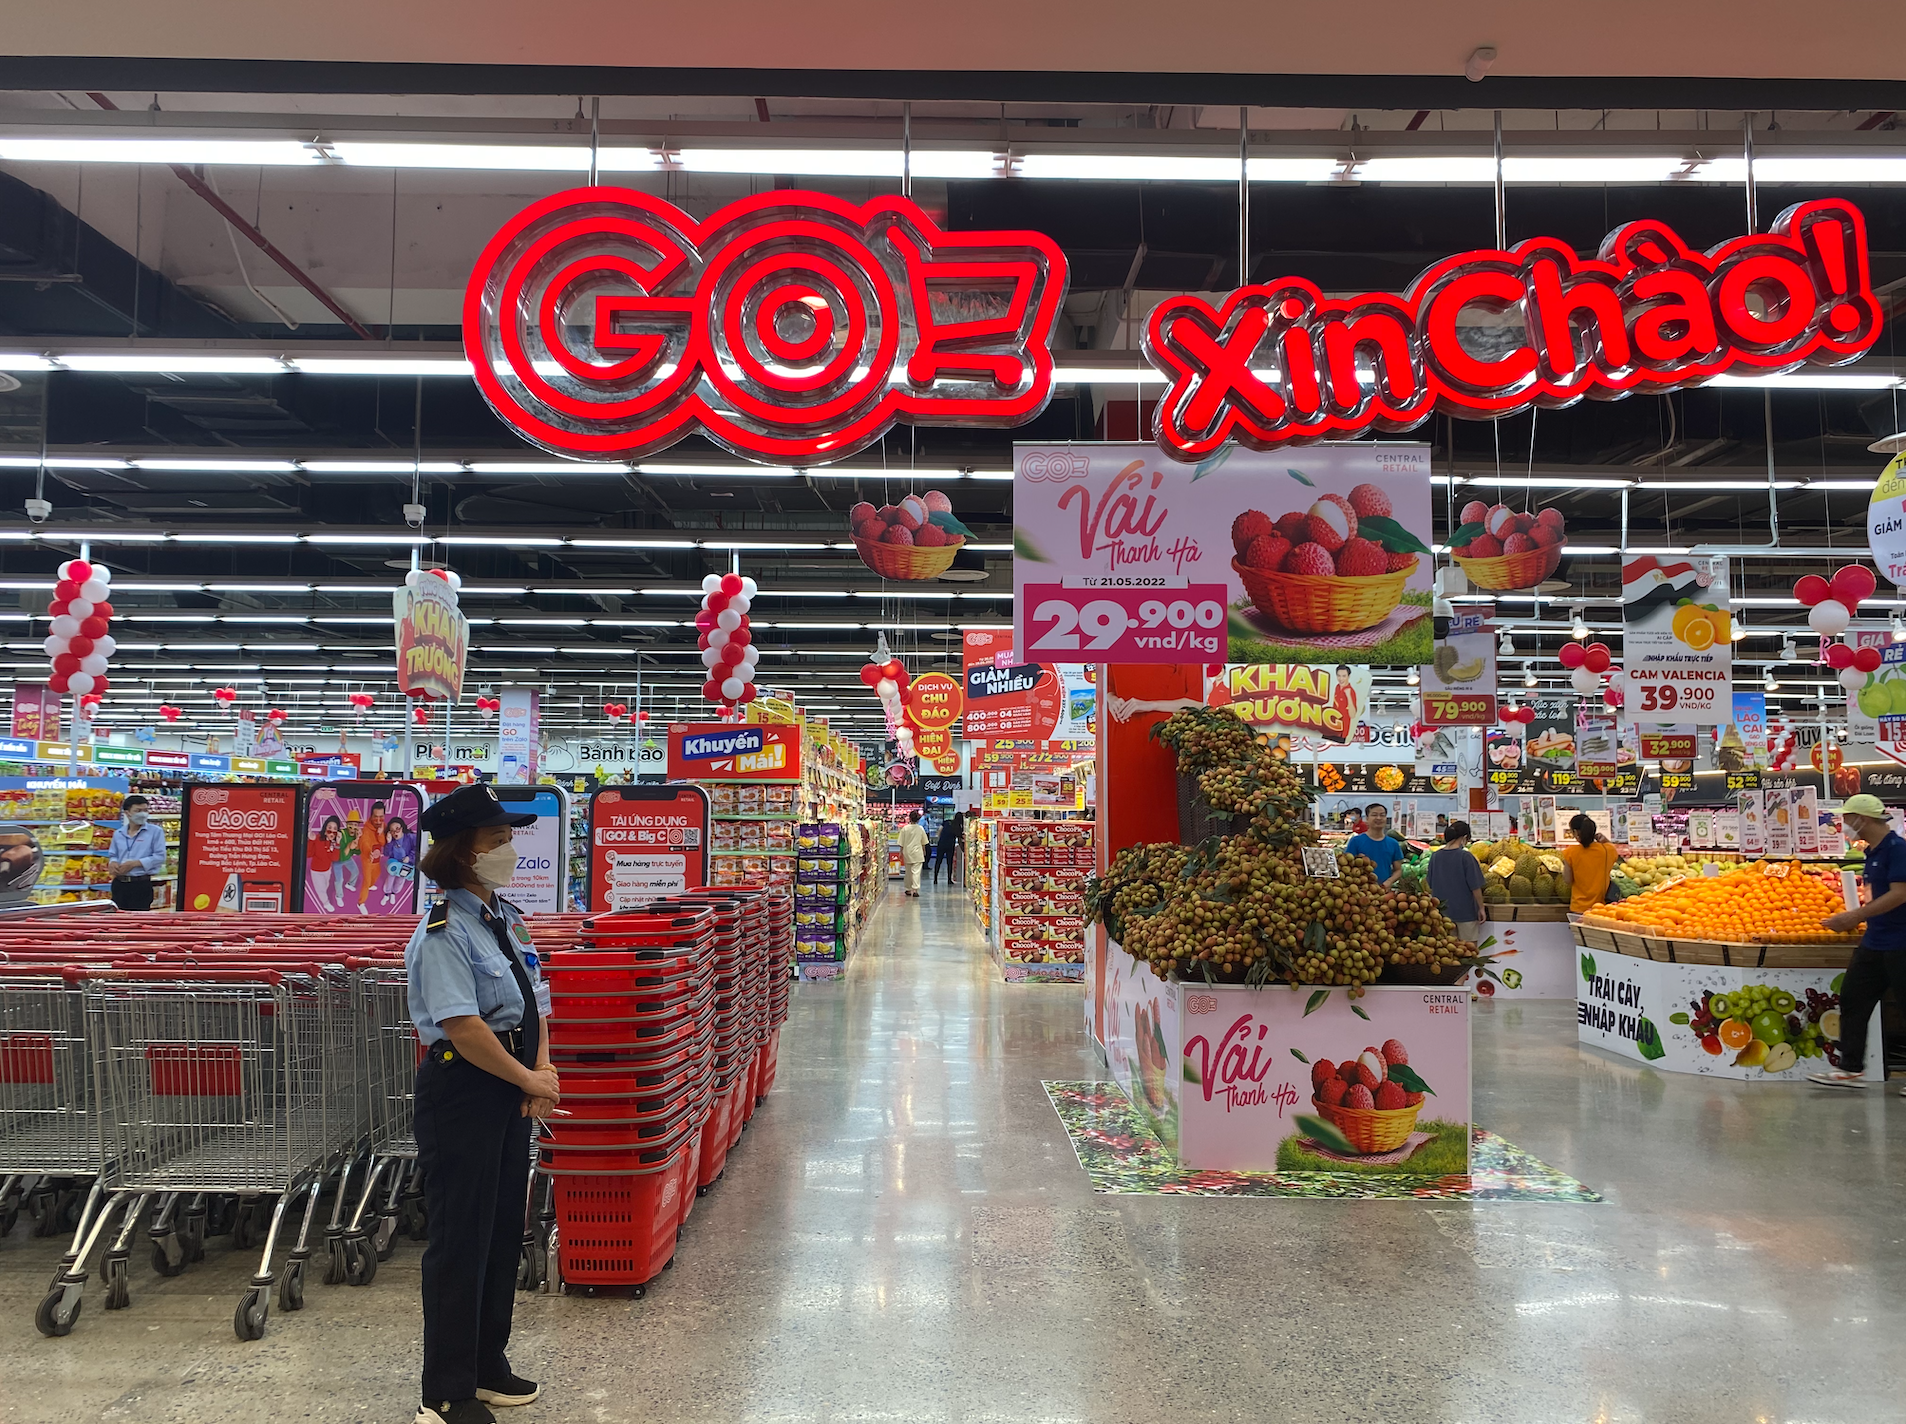 Cận cảnh đại siêu thị đầu tiên ở Lào Cai: Tổng diện tích 30.000m2, 300 tỷ đồng vốn đầu tư, 1/3 gian hàng đến từ doanh nghiệp địa phương - Ảnh 9.